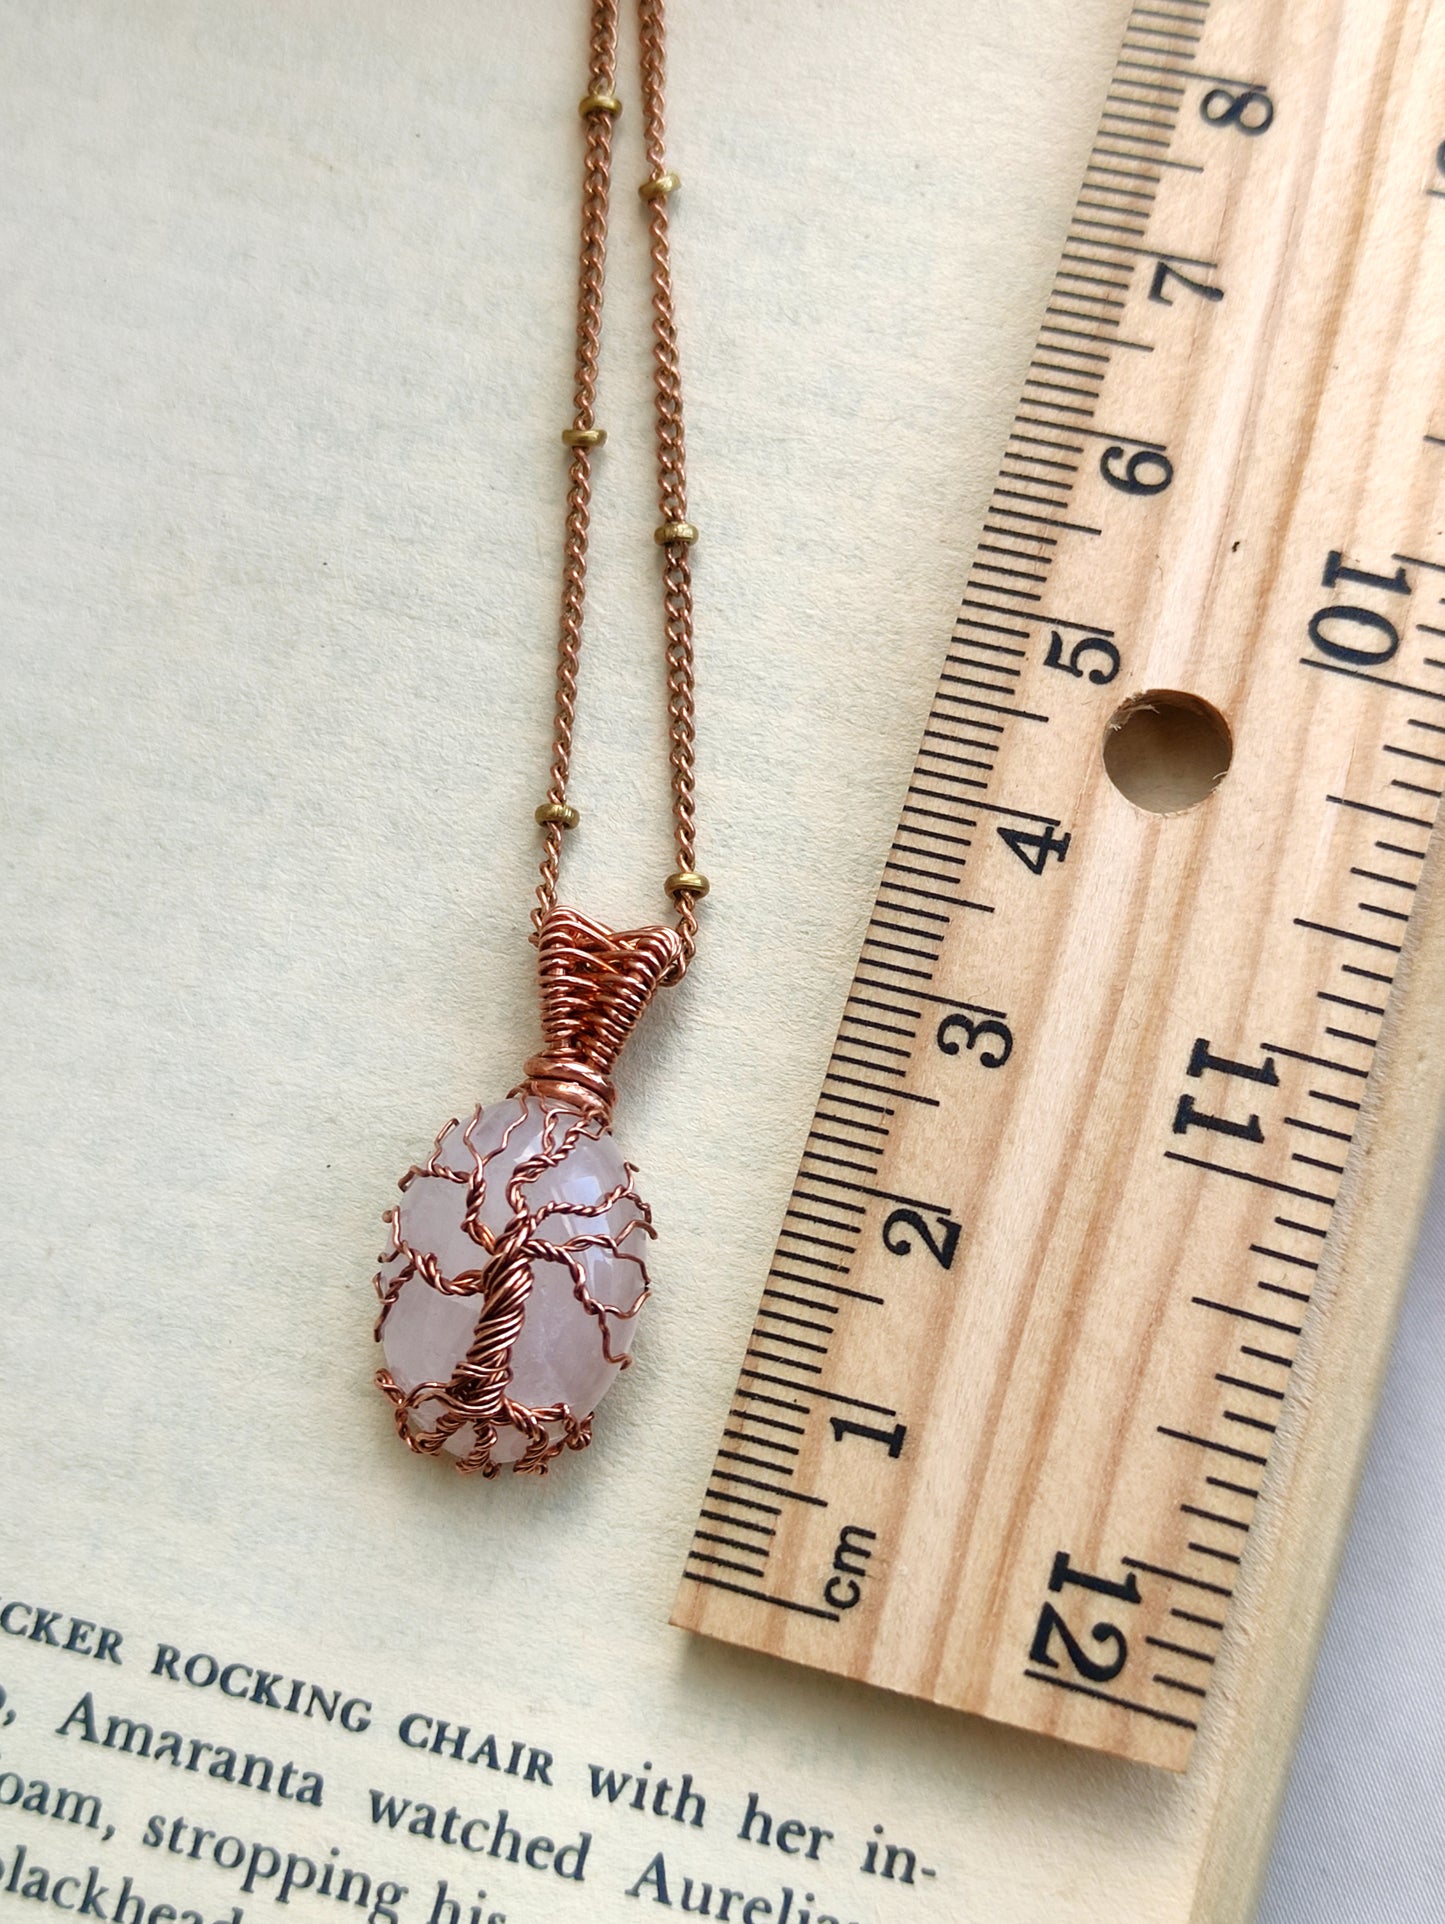 Mini Rose Quartz Tree of Life Pendant Necklace in Copper